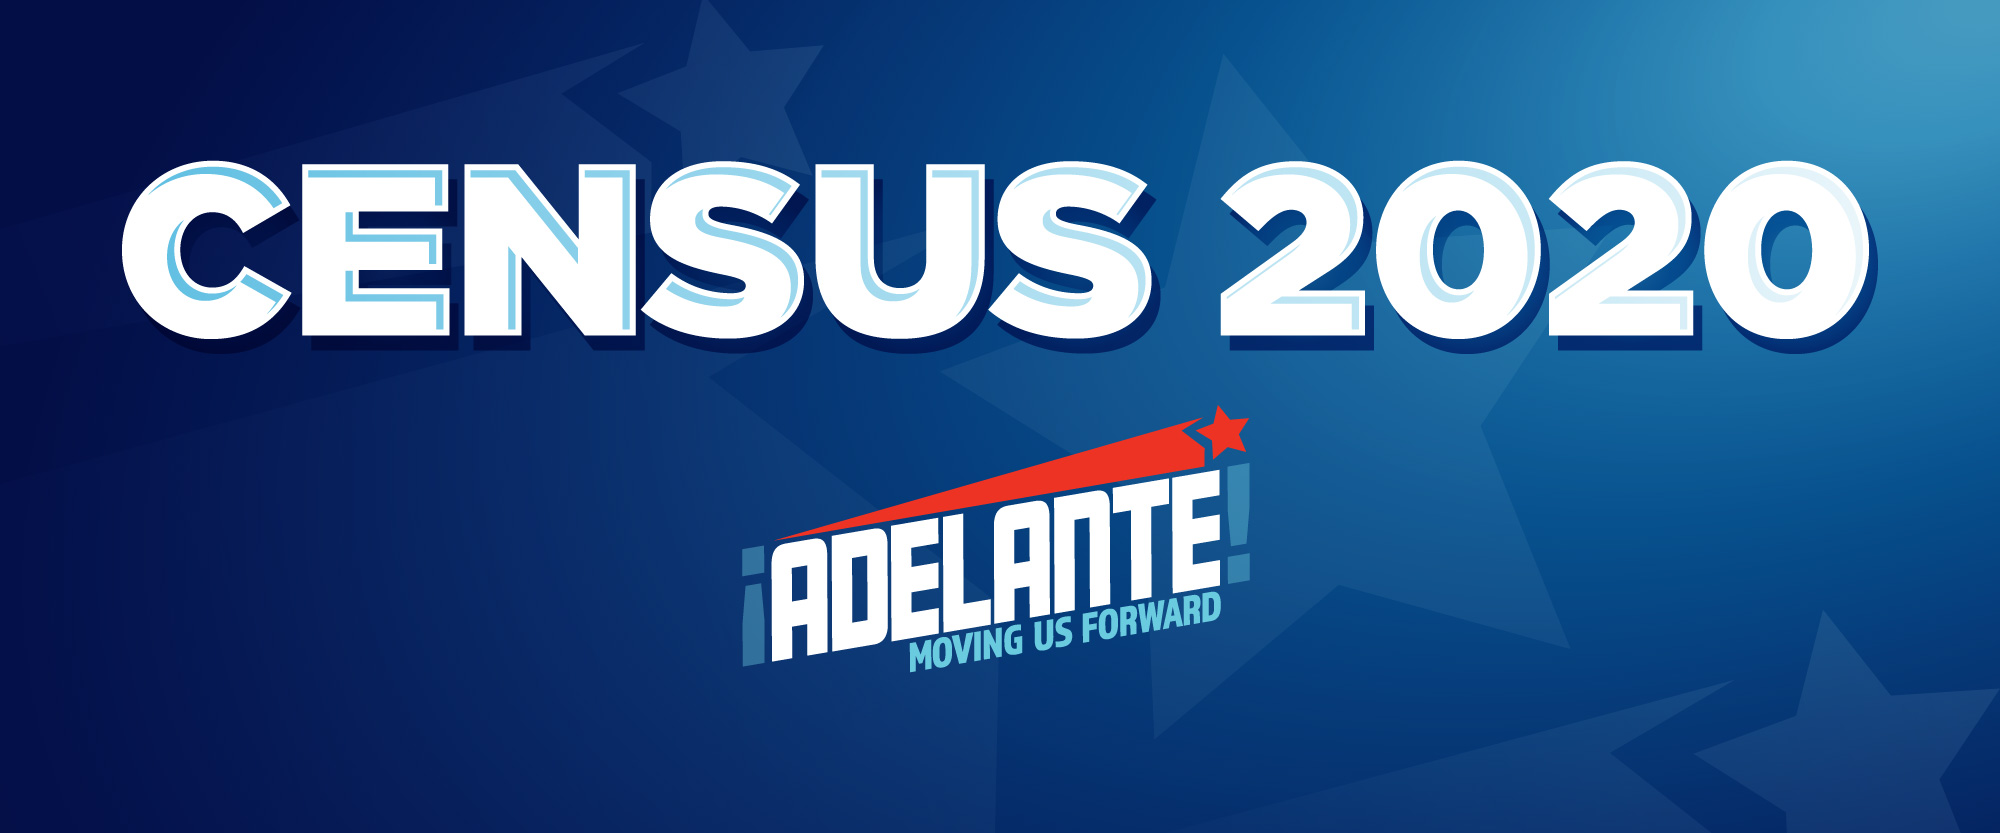 2020 Census | Adelante | UnidosUS